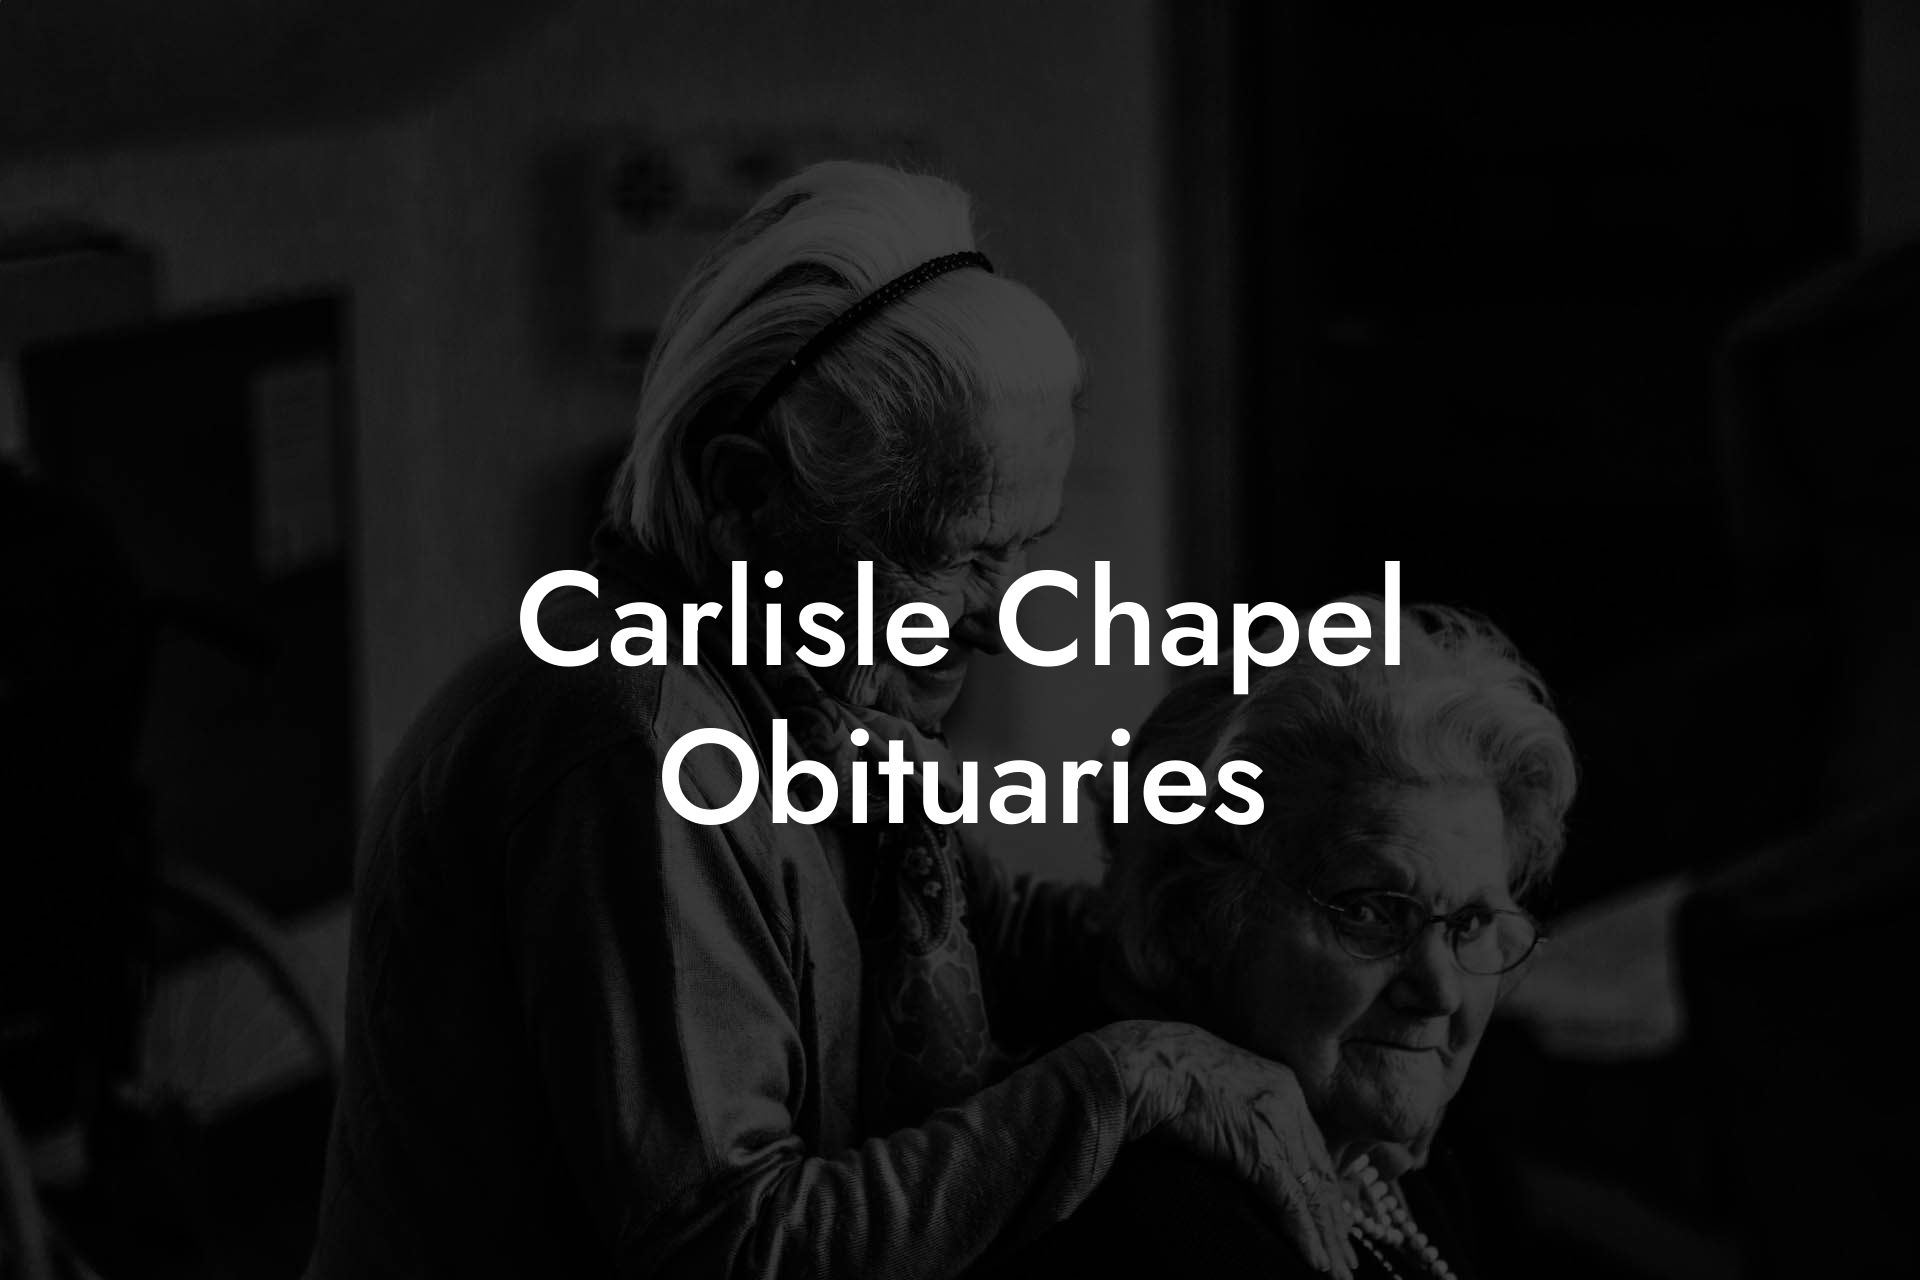 Carlisle Chapel Obituaries